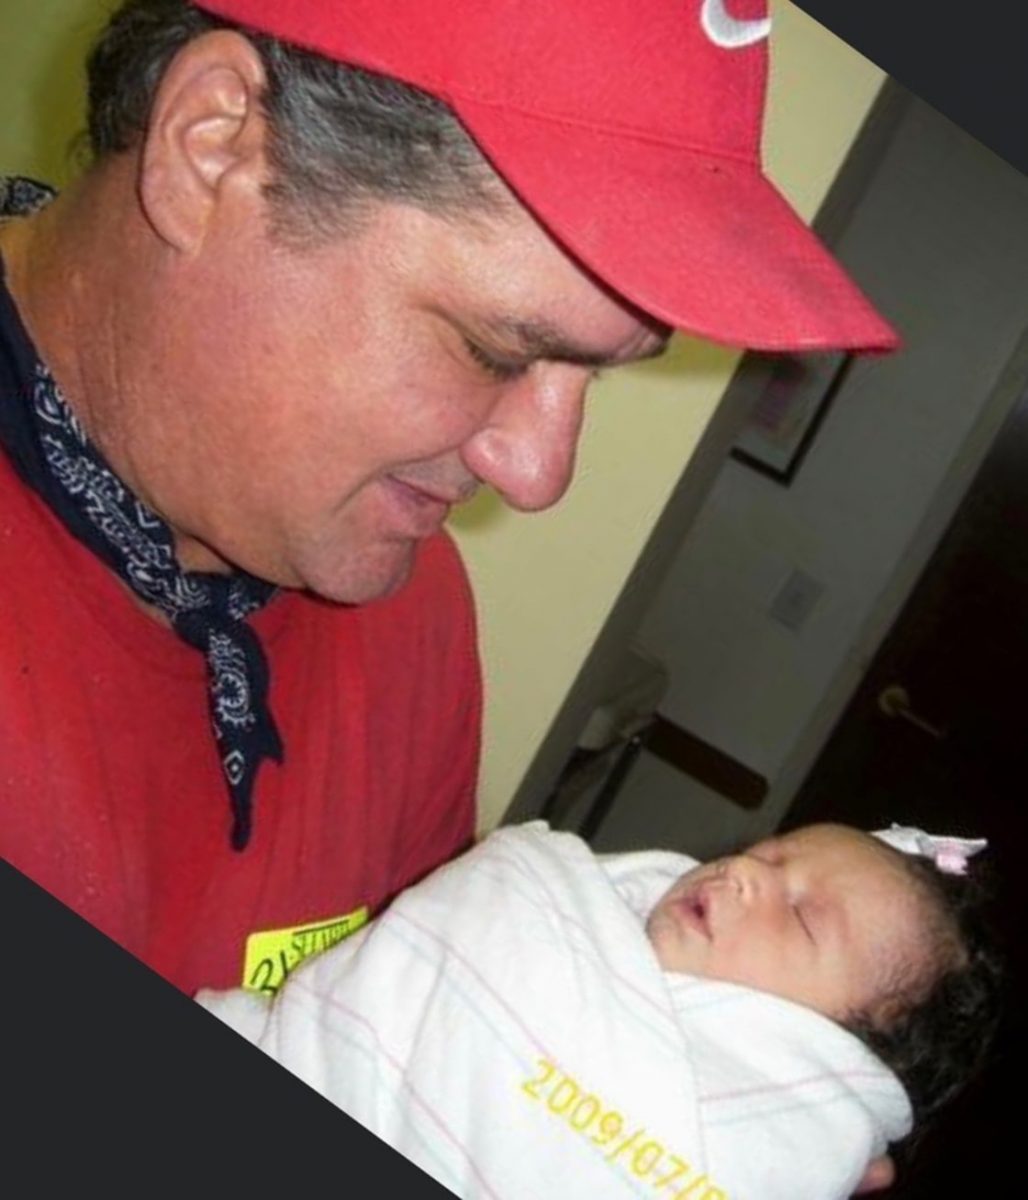 homemnapratica.com - Grávida acredita que pai falecido apareceu beijando seu bebê no ultrassom